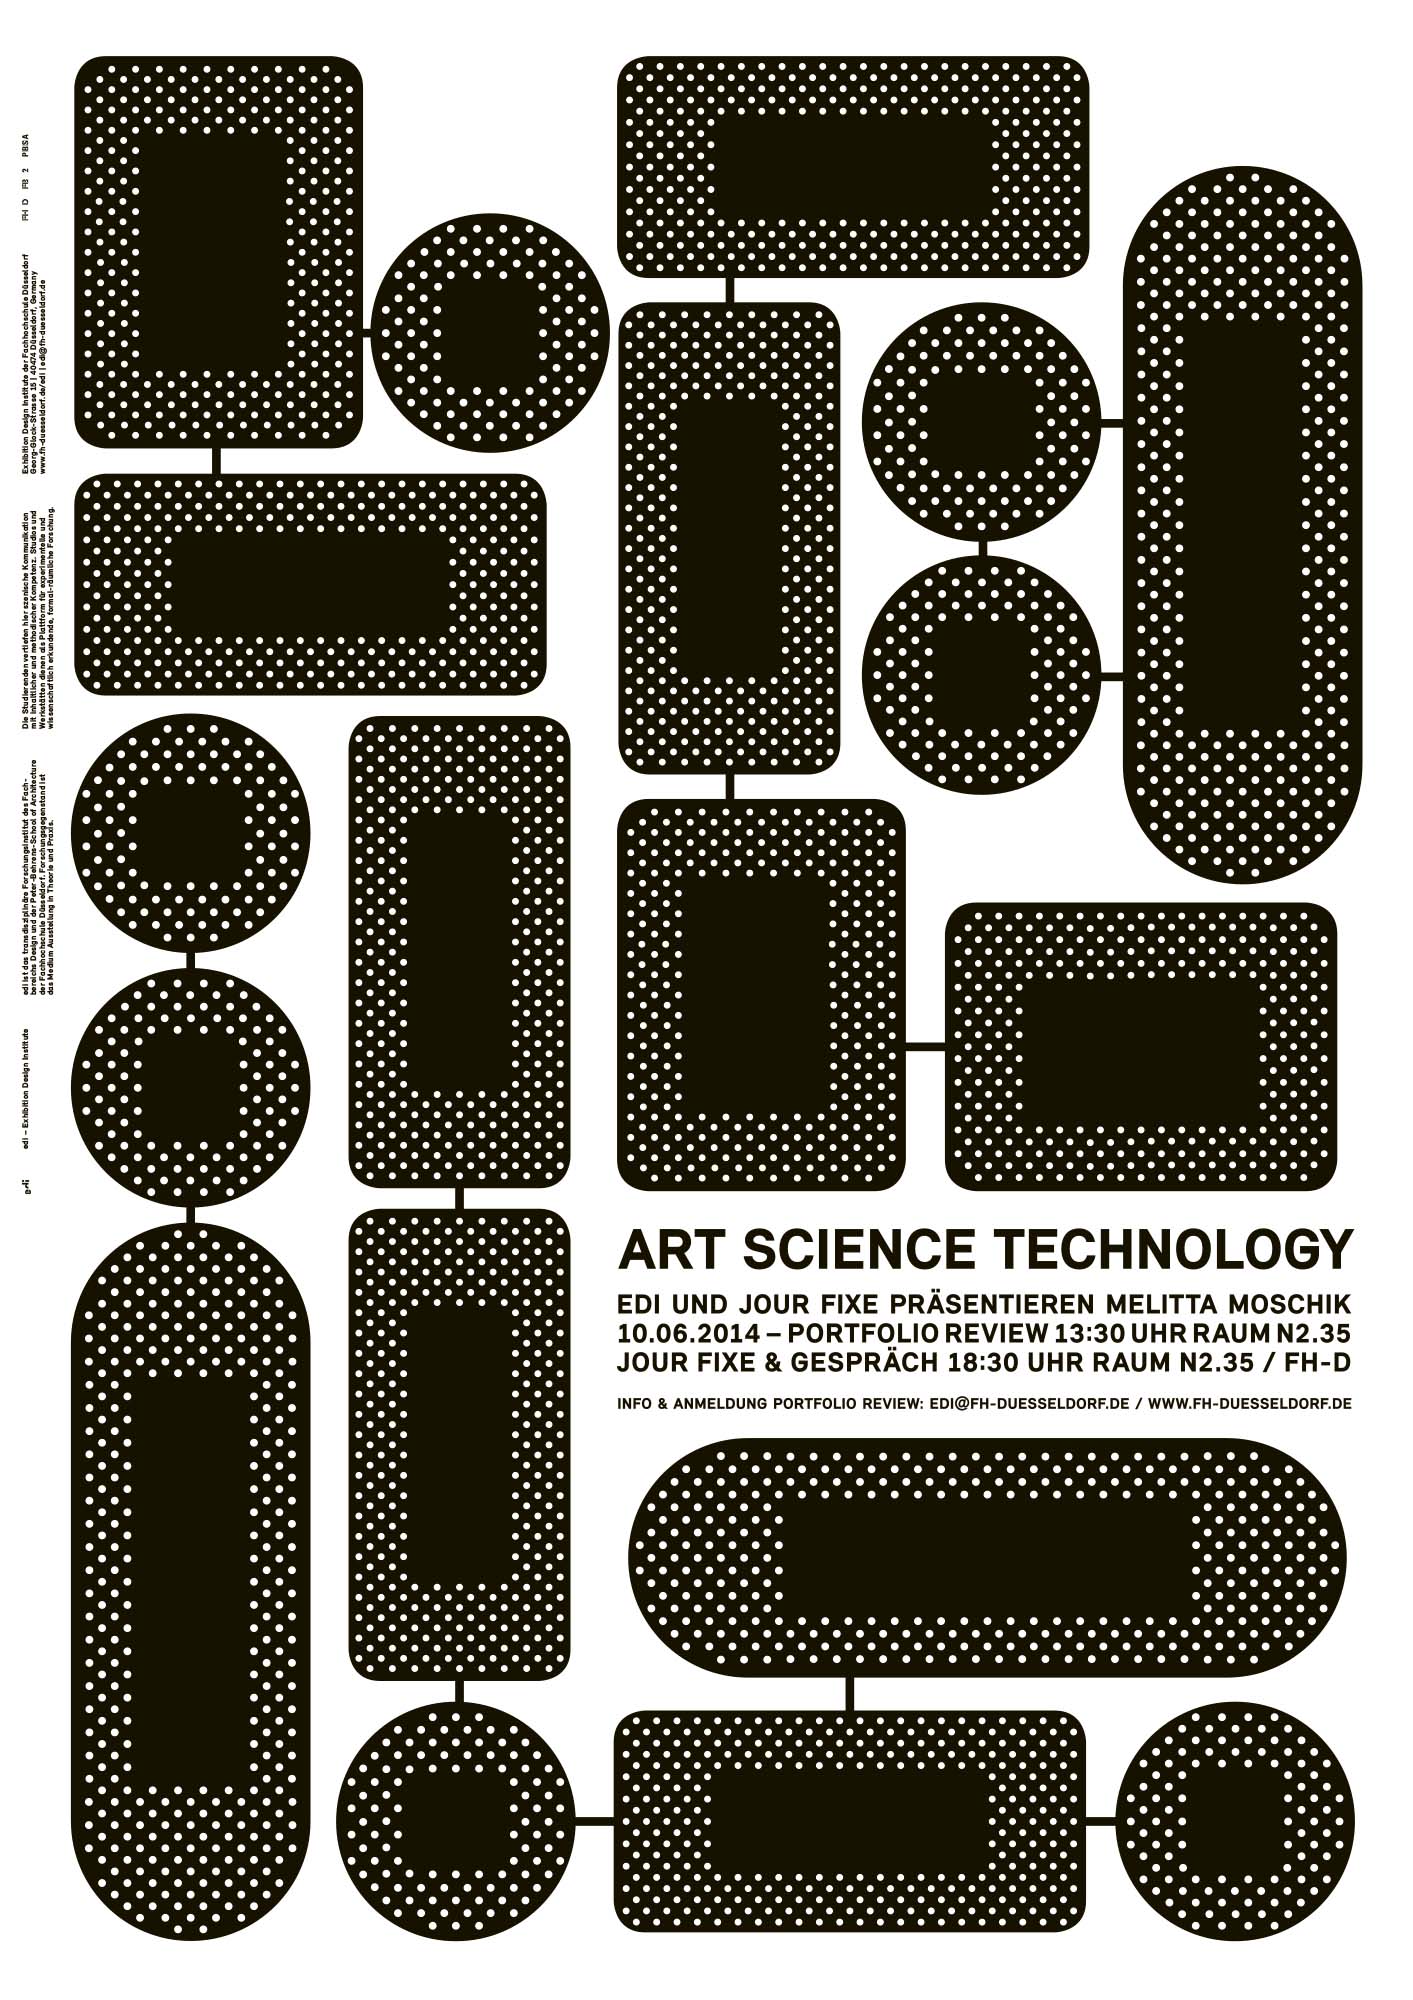 Gestaltet: Louisa Georg, Sadrick Schmidt, Betreut: Uwe J. Reinhardt, Titel: Art Science Technology, Jahr: 2014